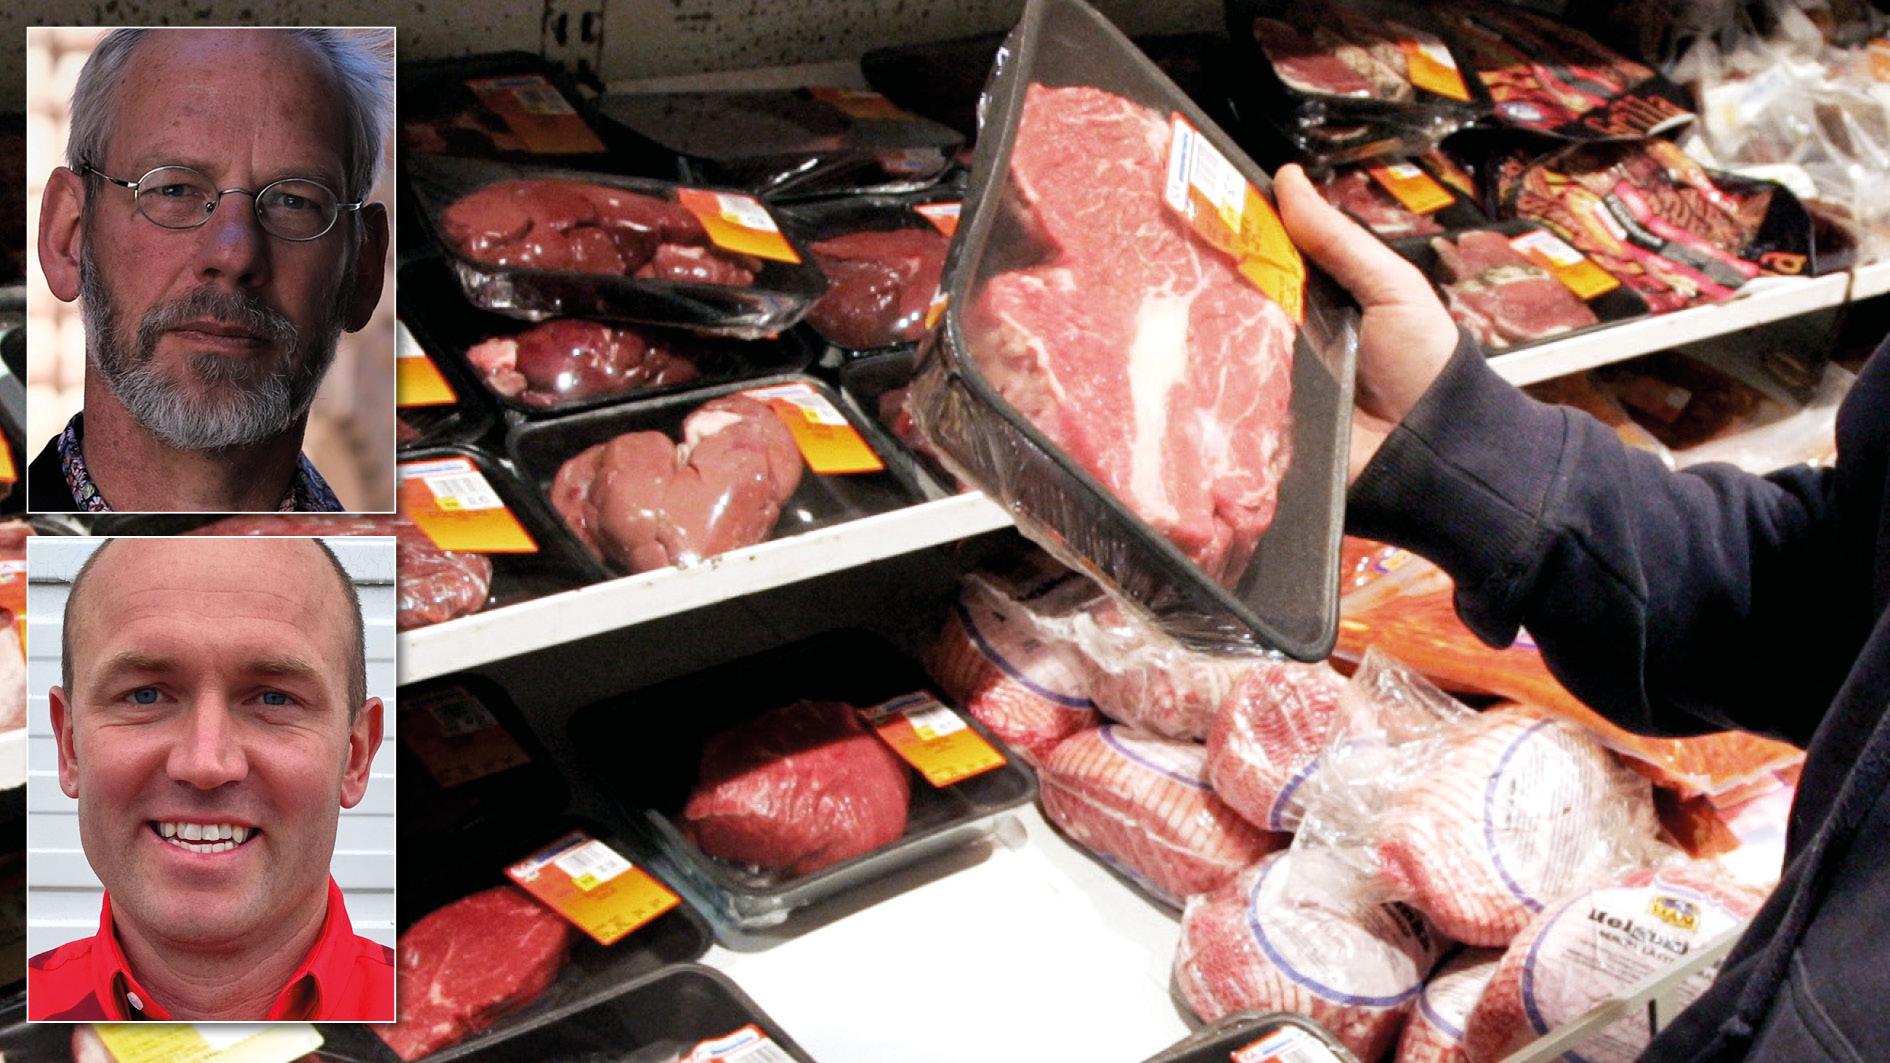 Köttstölderna leder till att många livsmedelshandlare nu beställer hem mindre mängder svenskt kött. Ytterst leder det till att Sveriges bönder får svårare att sälja det kött som de producerar, skriver Livsmedelshandlarna tillsammans med flera butiker runt om i landet.